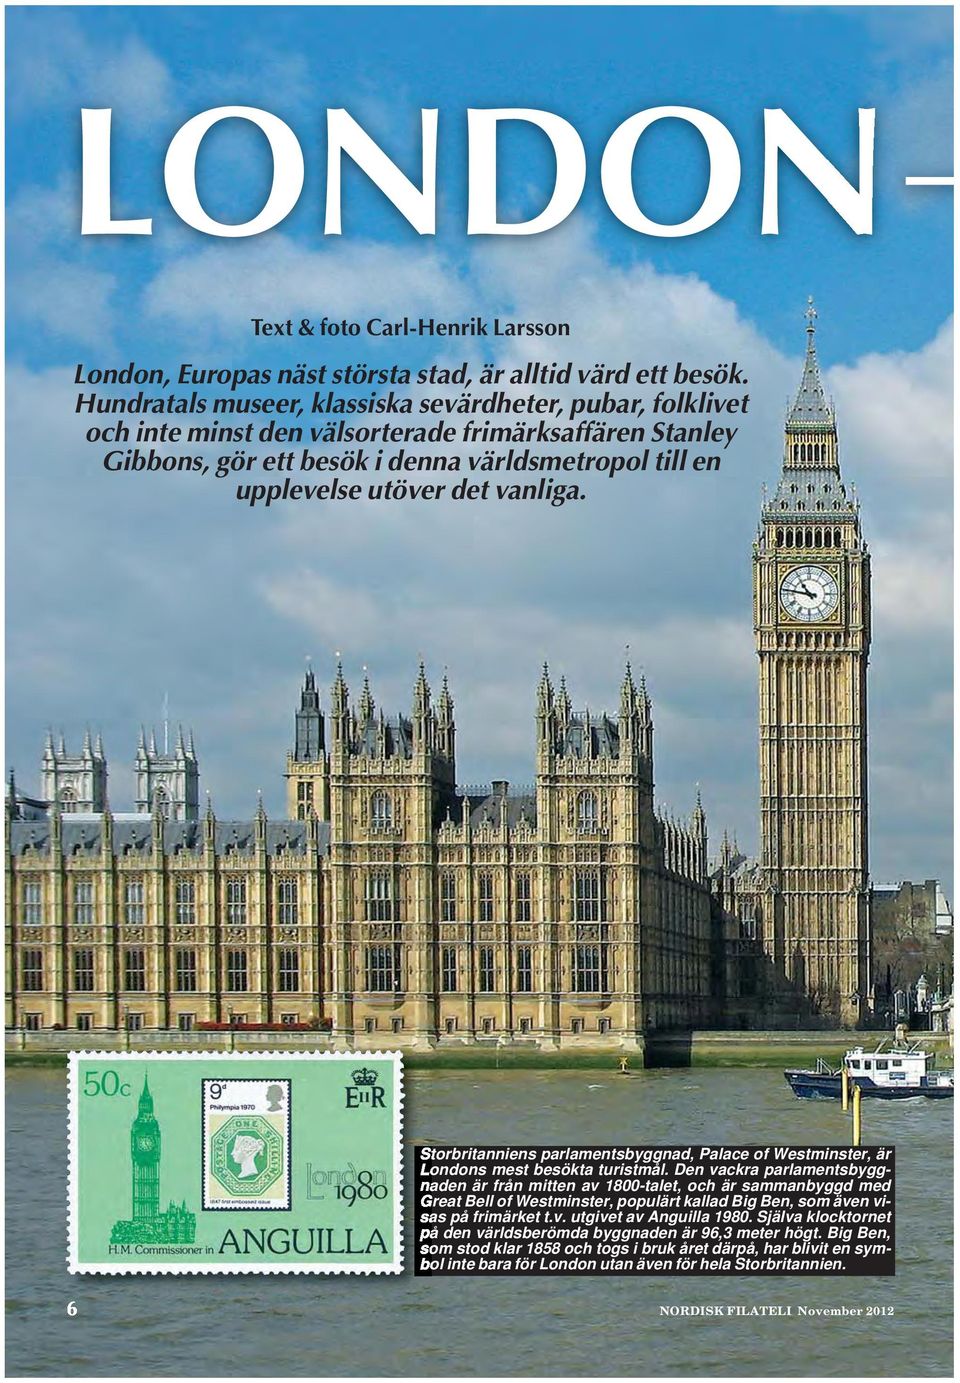 Storbritanniens parlamentsbyggnad, Palace of Westminster, är Londons mest besökta turistmål.